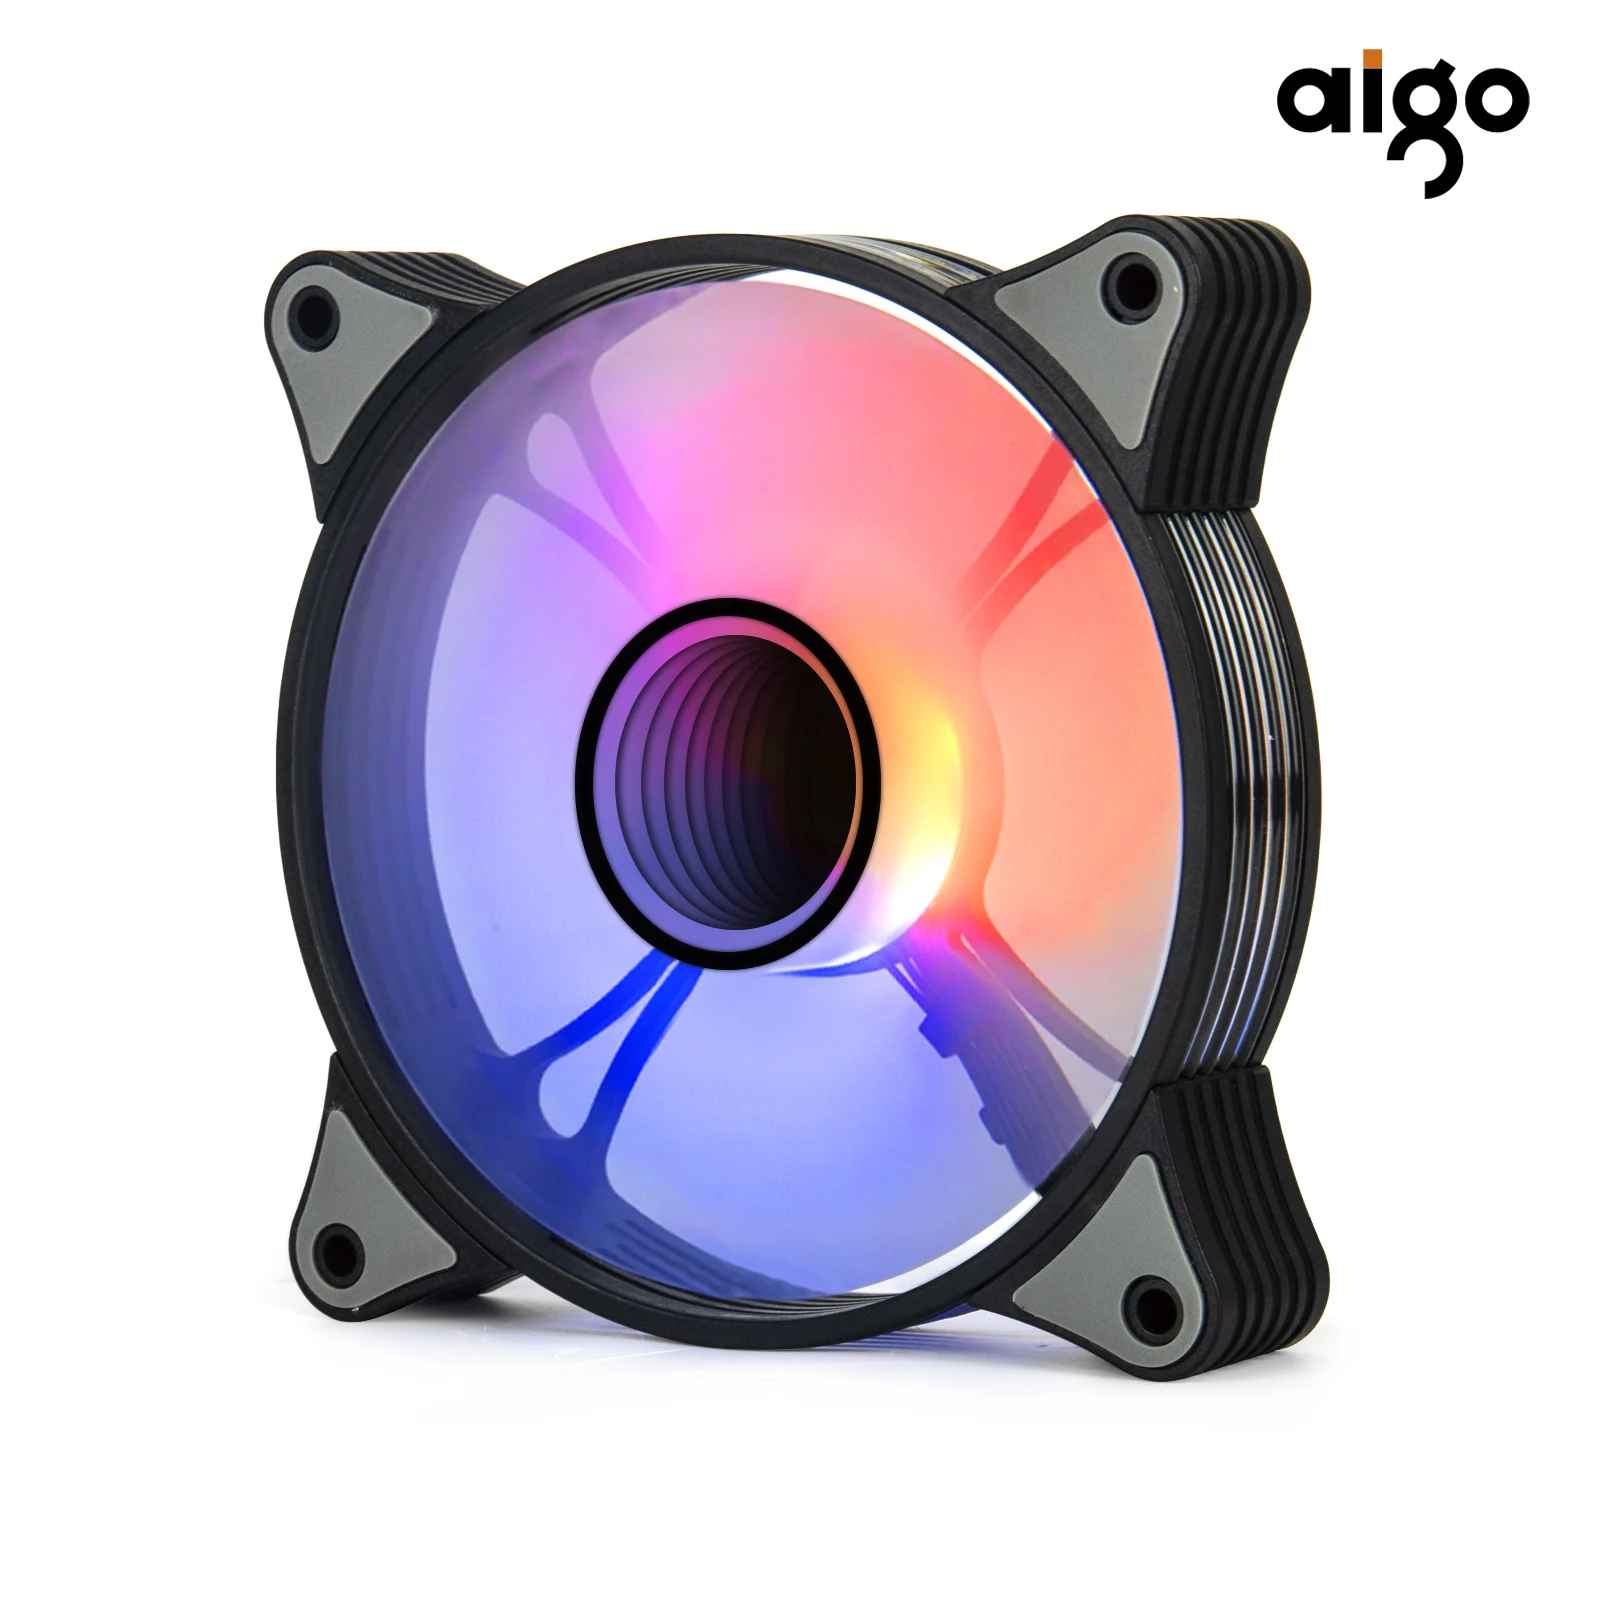 Вентилятор Aigo AR12PRO для компьютера 120 мм rgb вентилятор 4 контакта ШИМ охлаждения 3 5 В